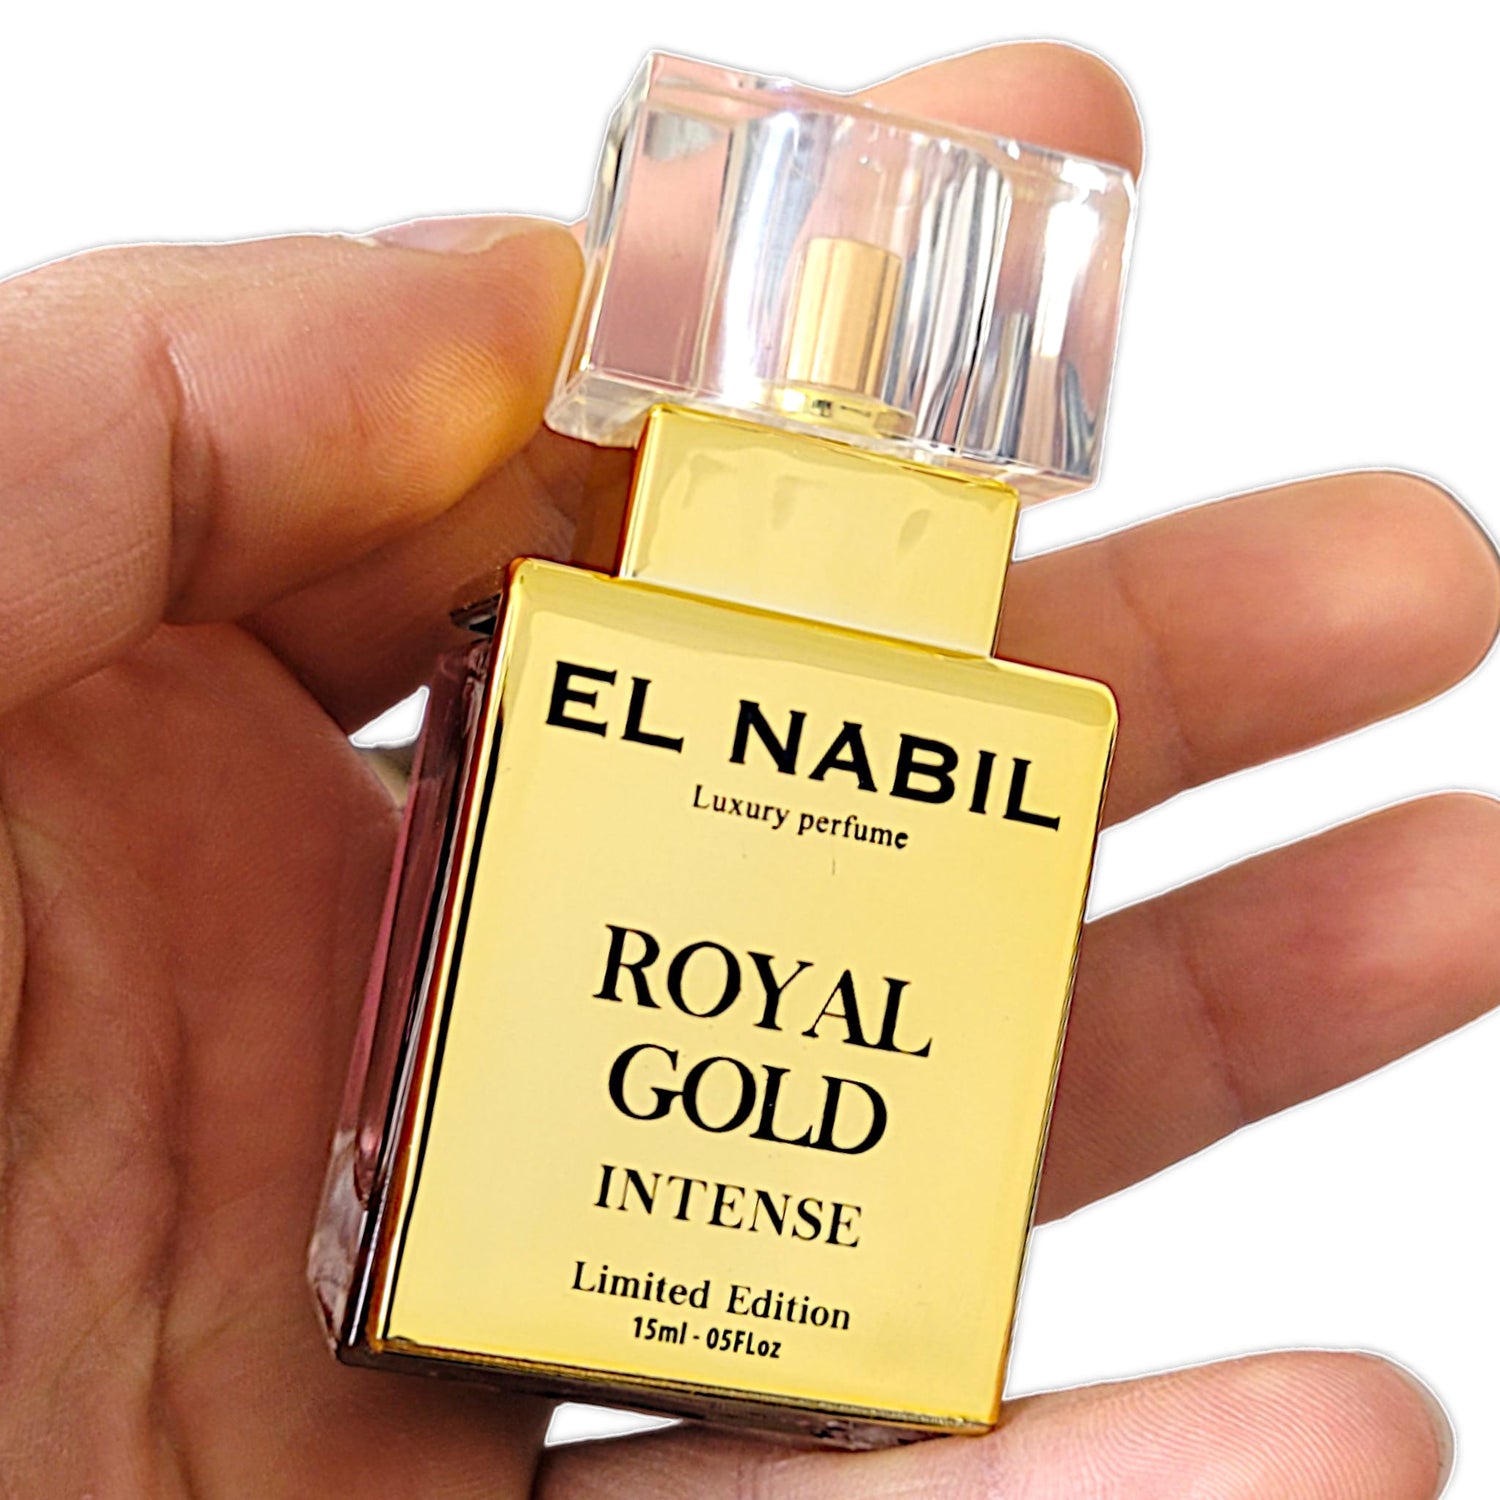 El Nabil Royal Gold Set 50ml EDP 15 ml Intense 5 ml Parfüm Öl Gratis